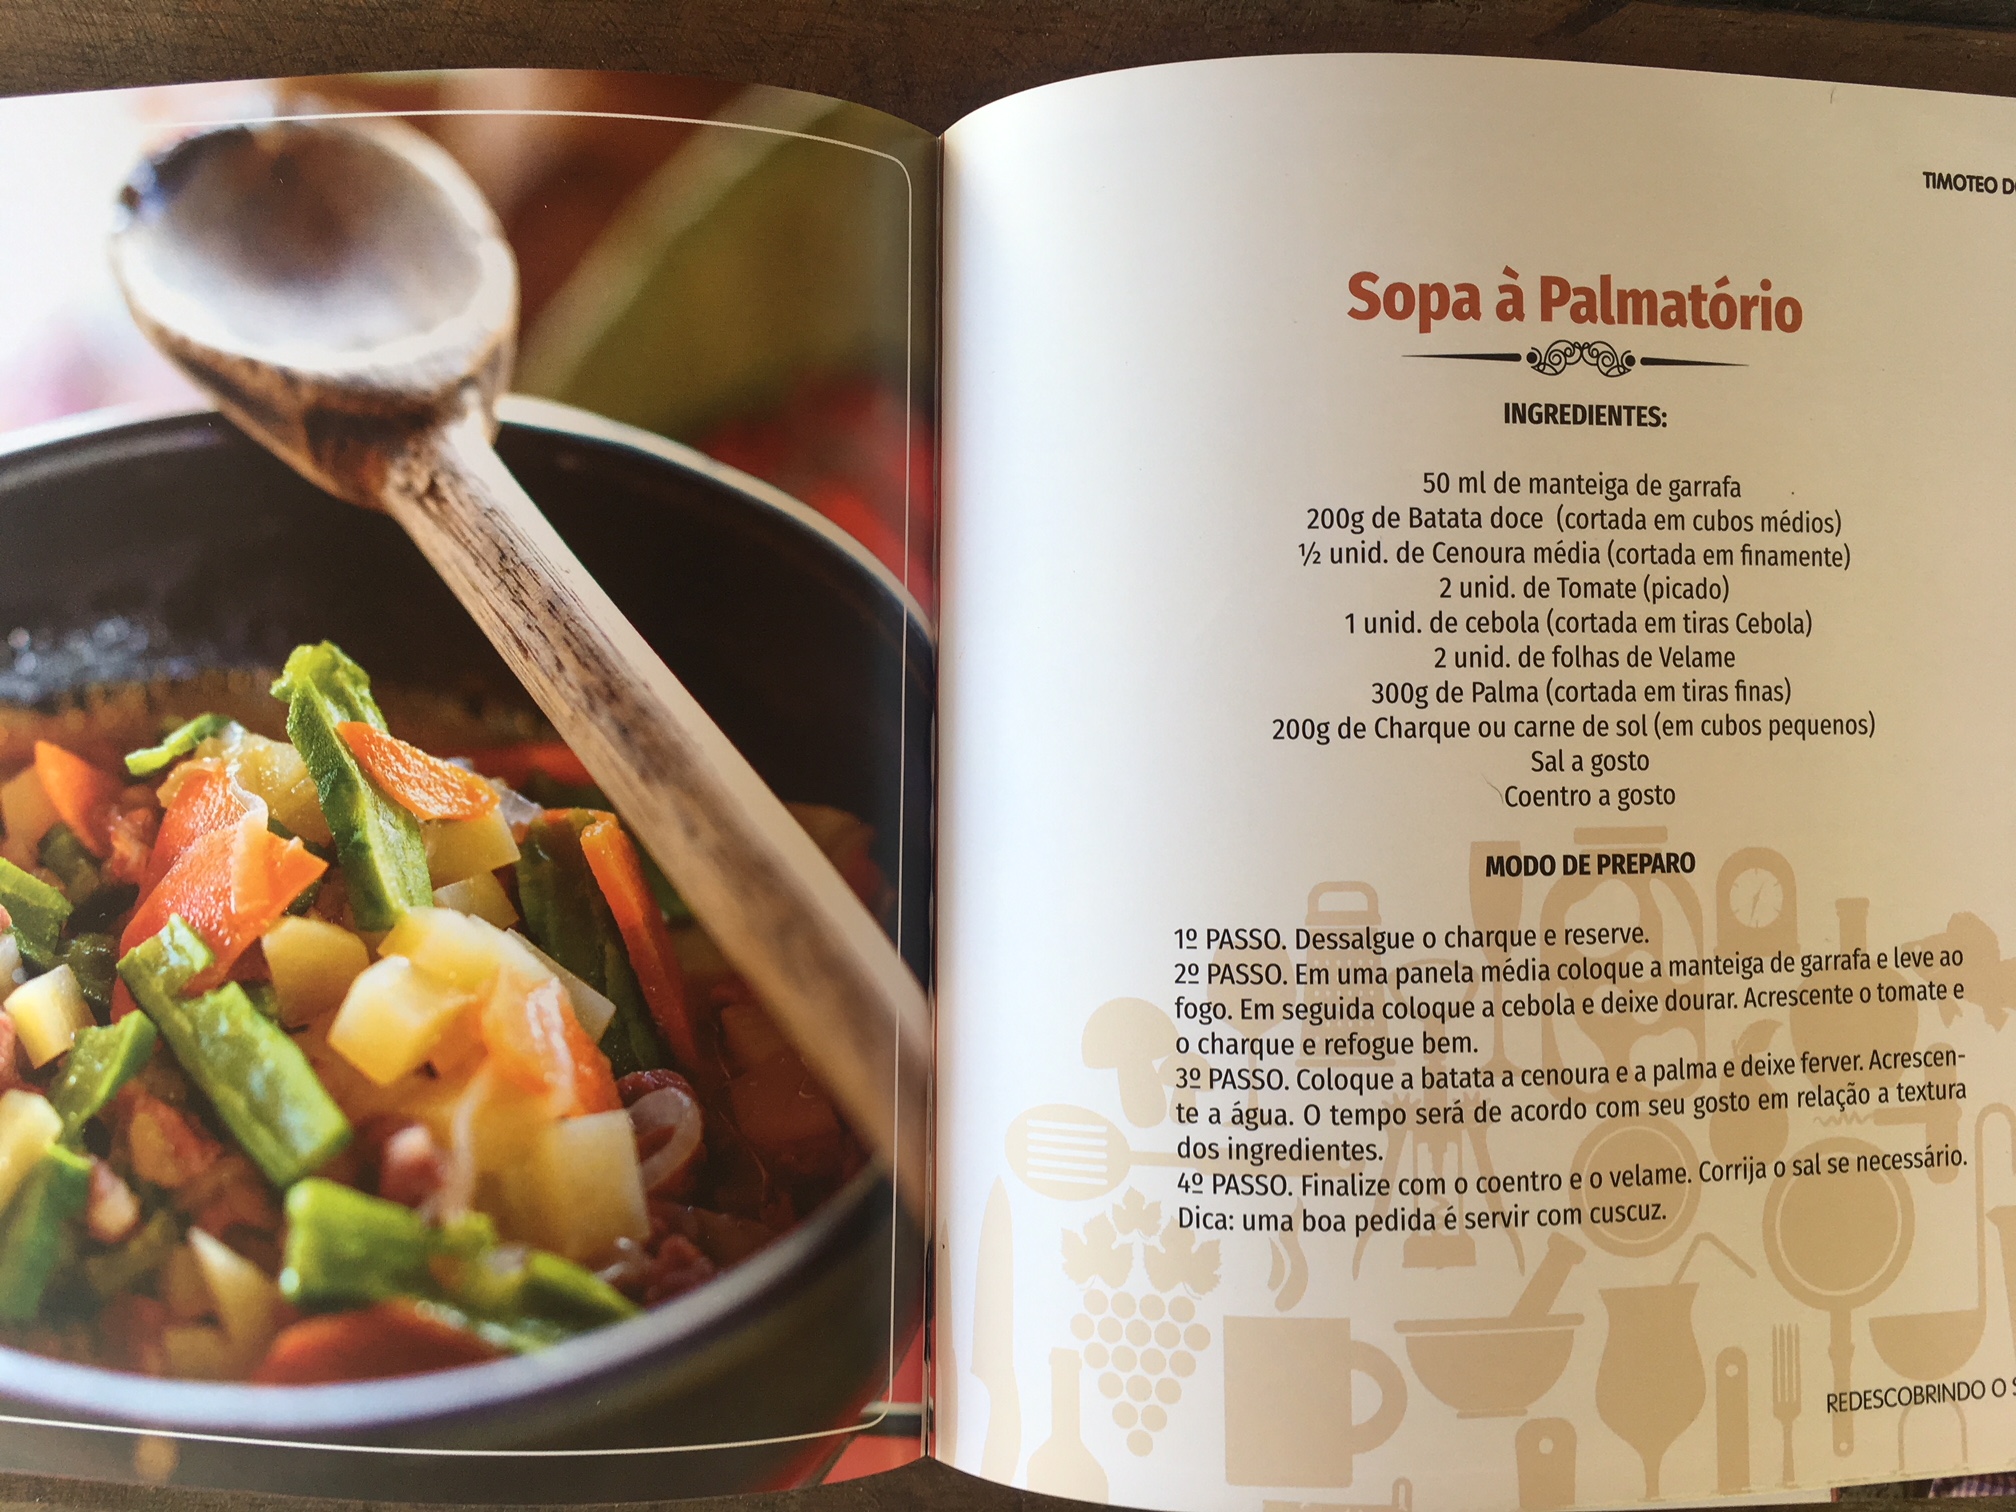 Palma, mandacaru e xique xique: Alimentos da Caatinga são abordadas em livro